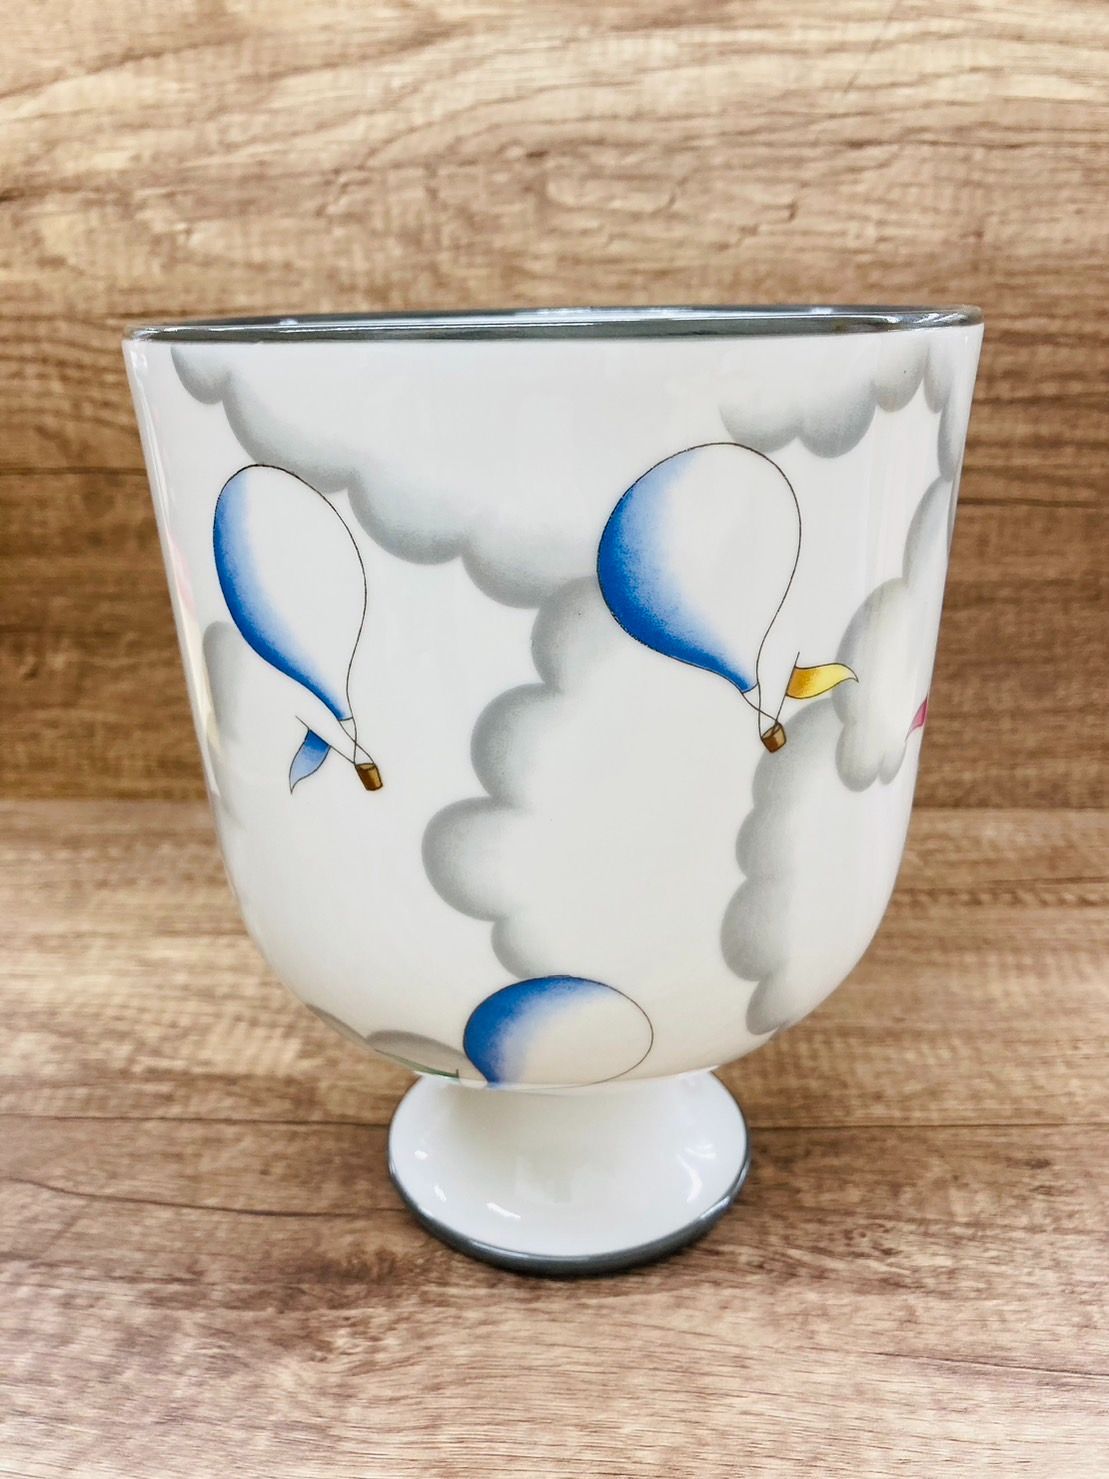 リチャード・ジノリ (Richard Ginori) 磁器の花瓶 - 花瓶